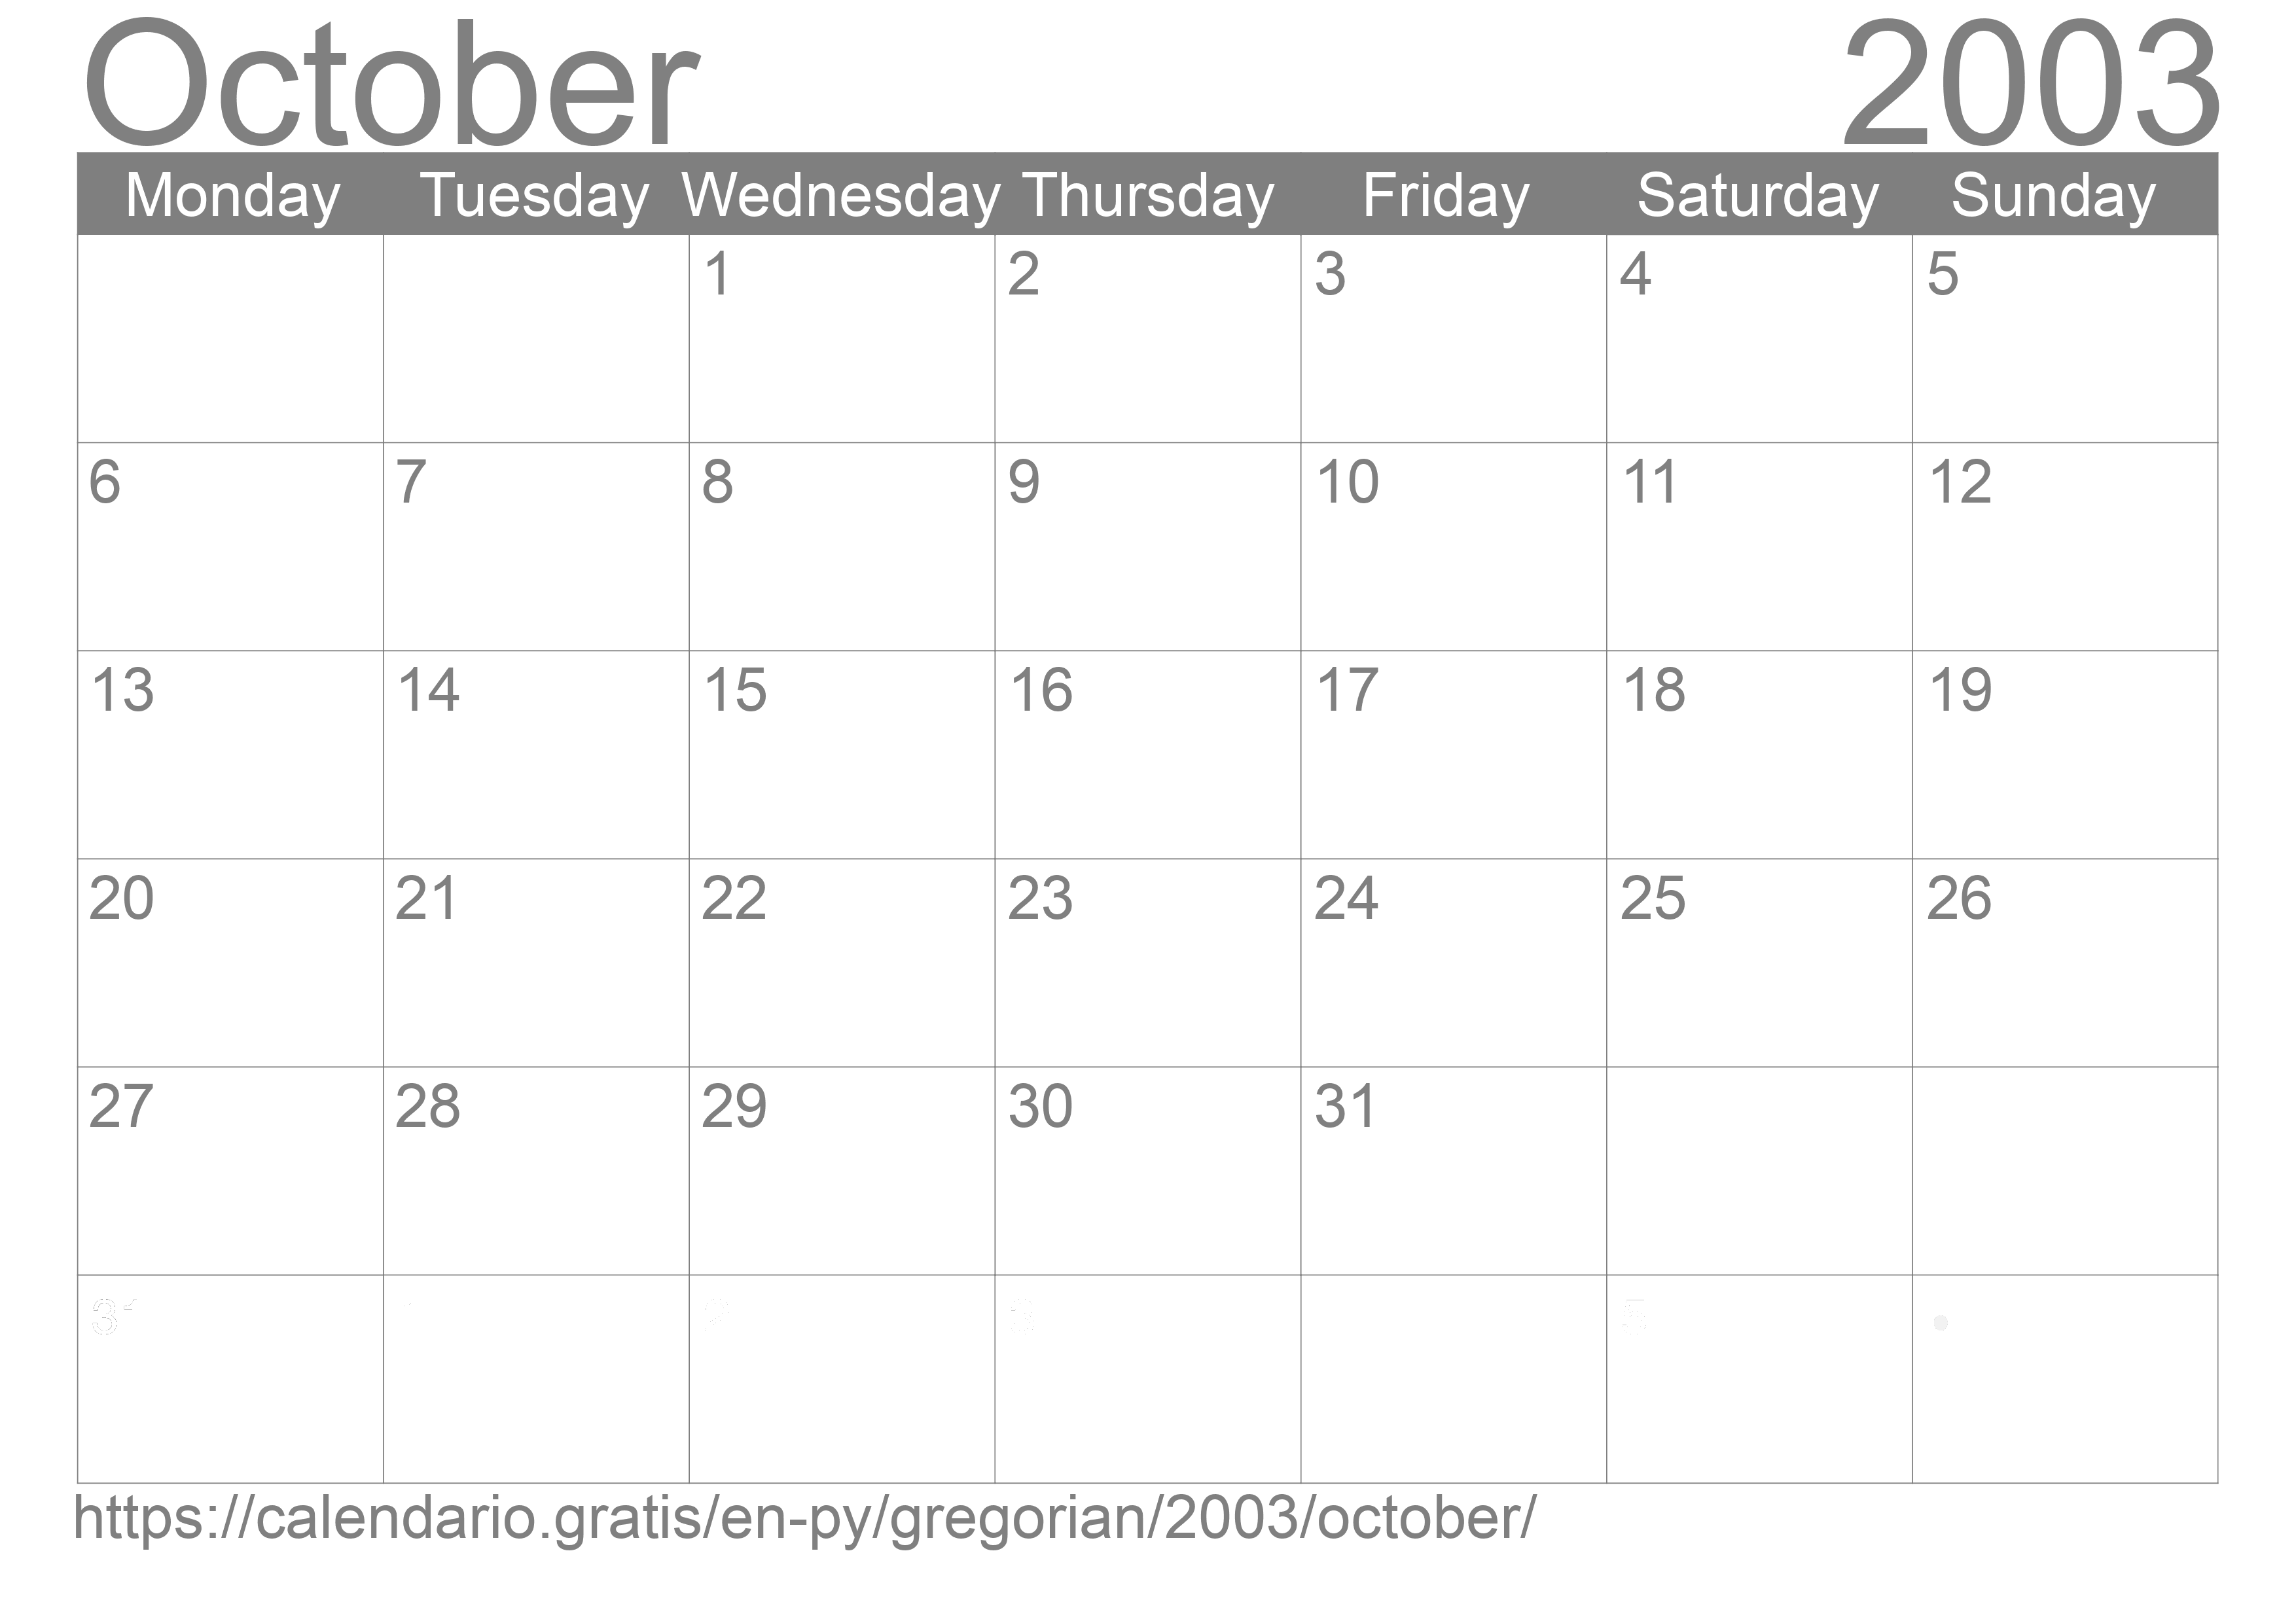 Calendar October 2003 to print